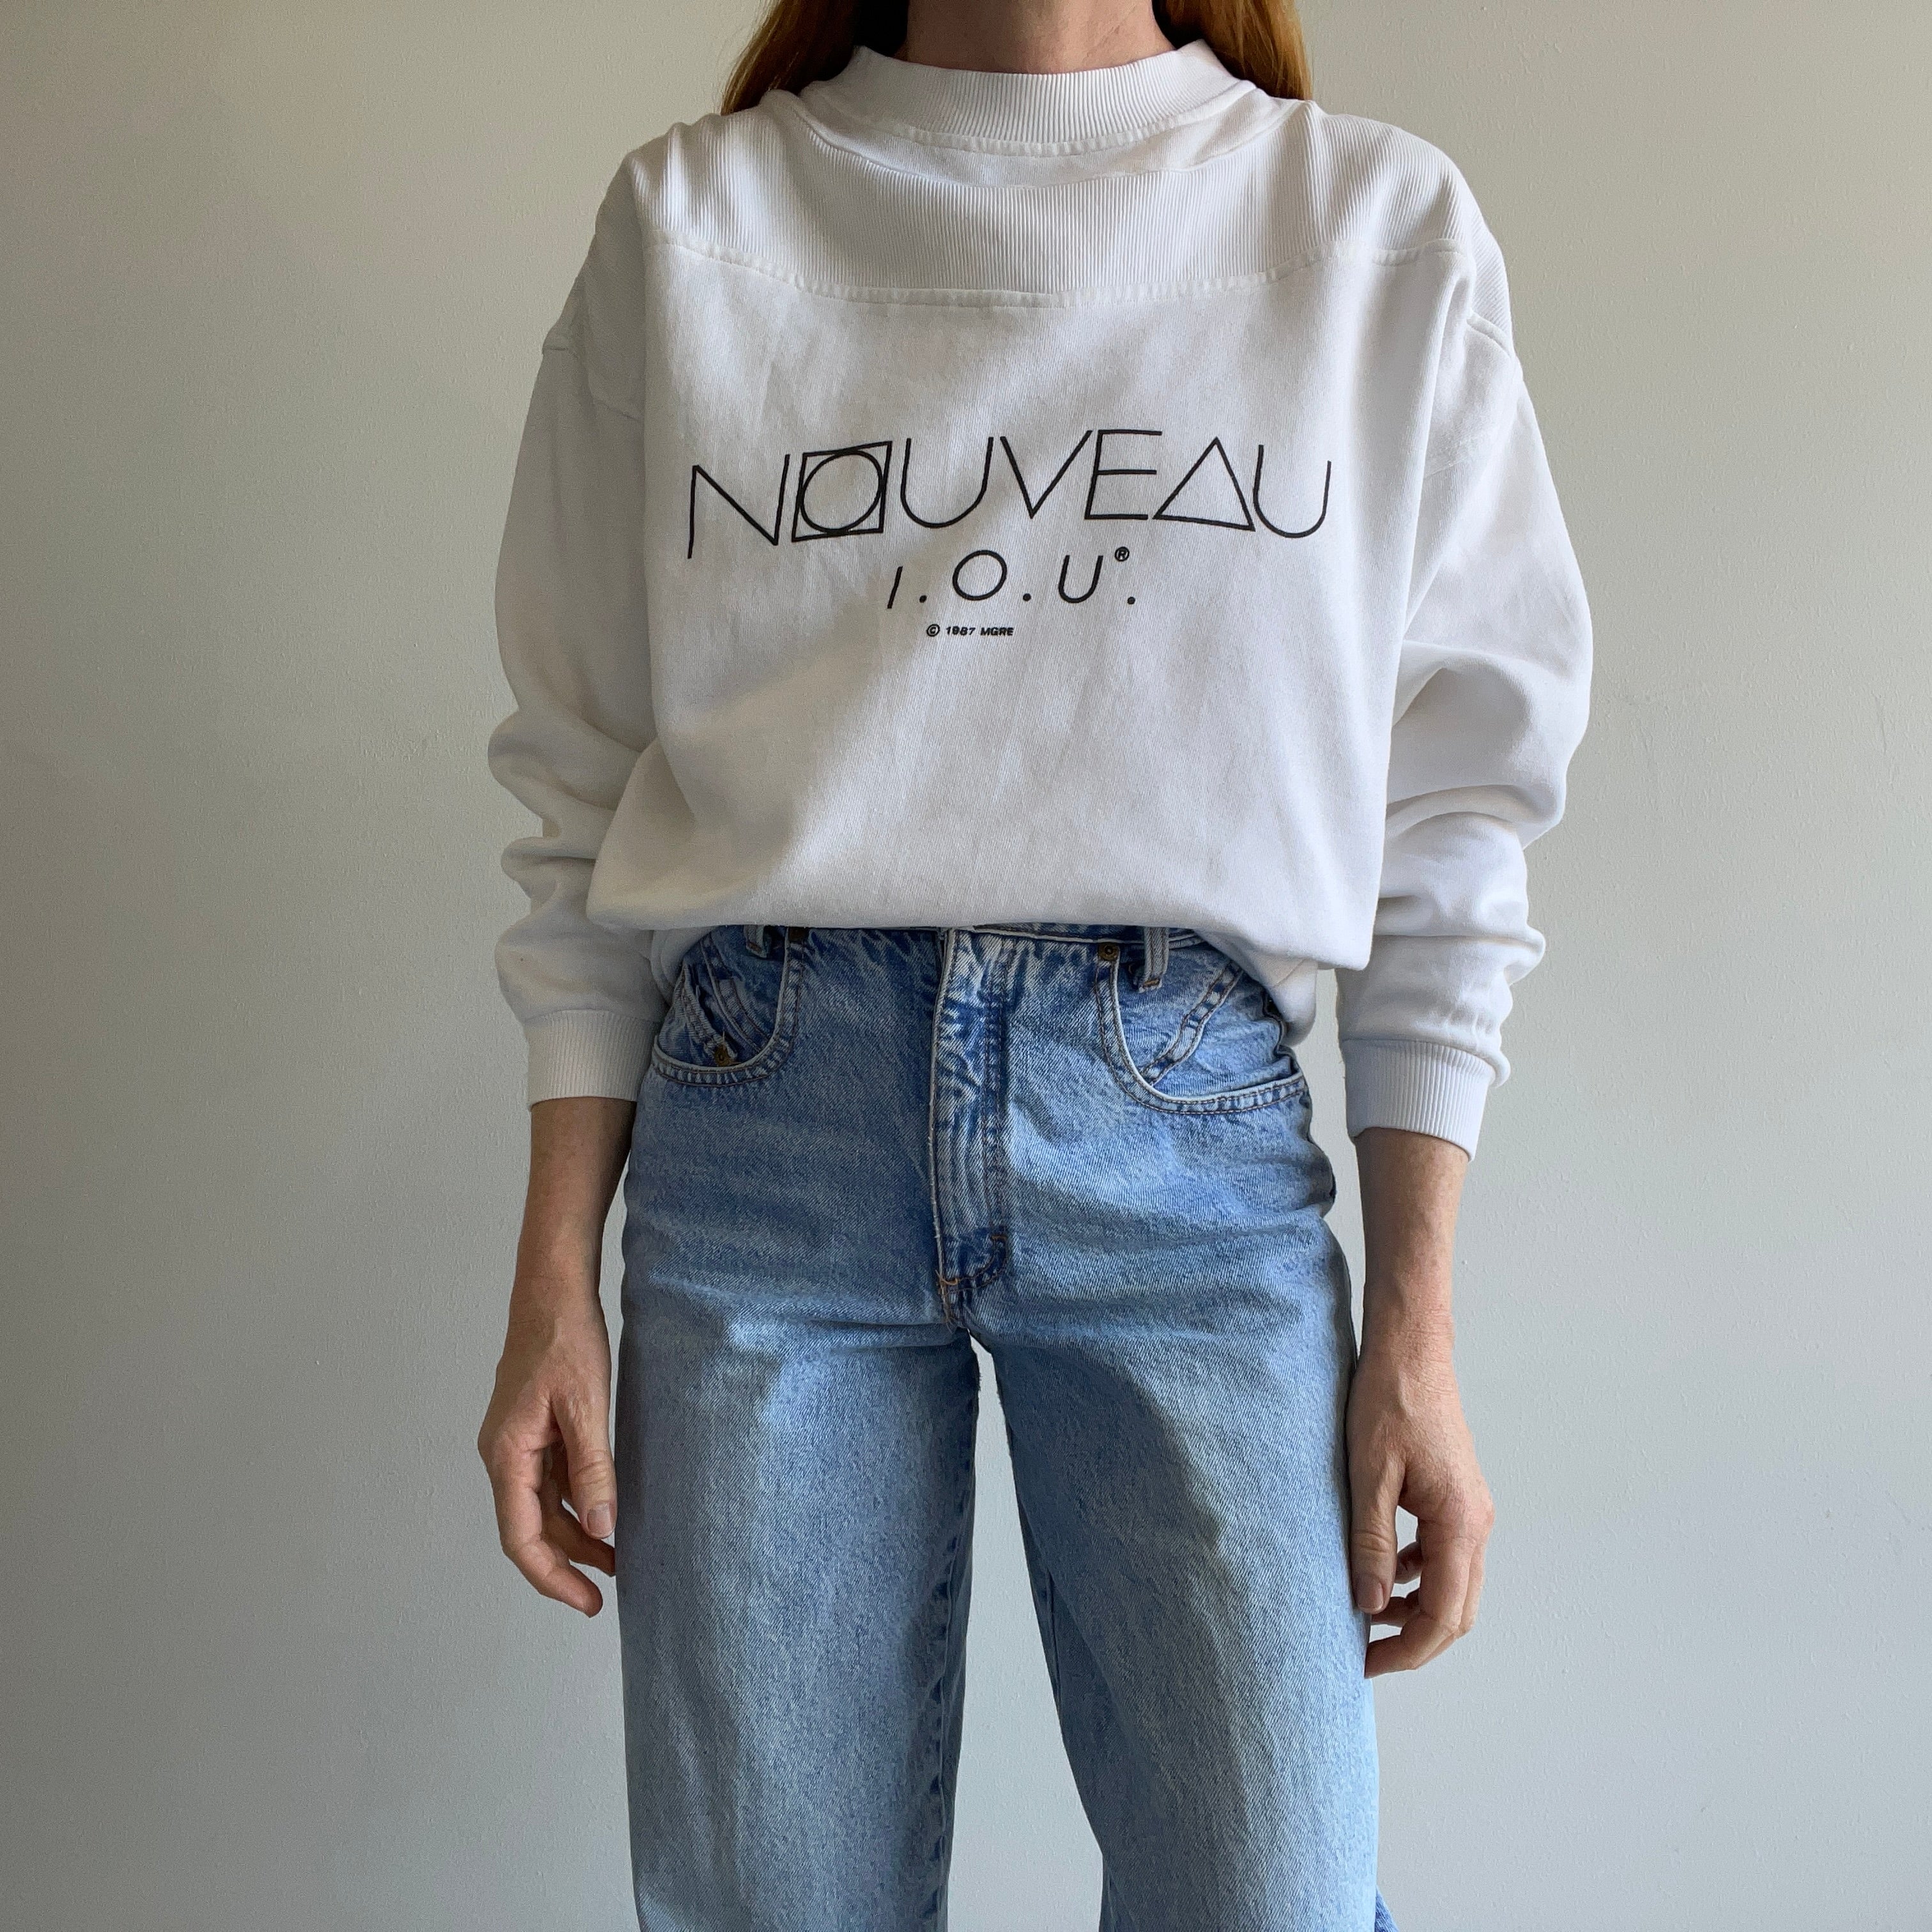 1987 Nouveau I.O.U. Sweatshirt